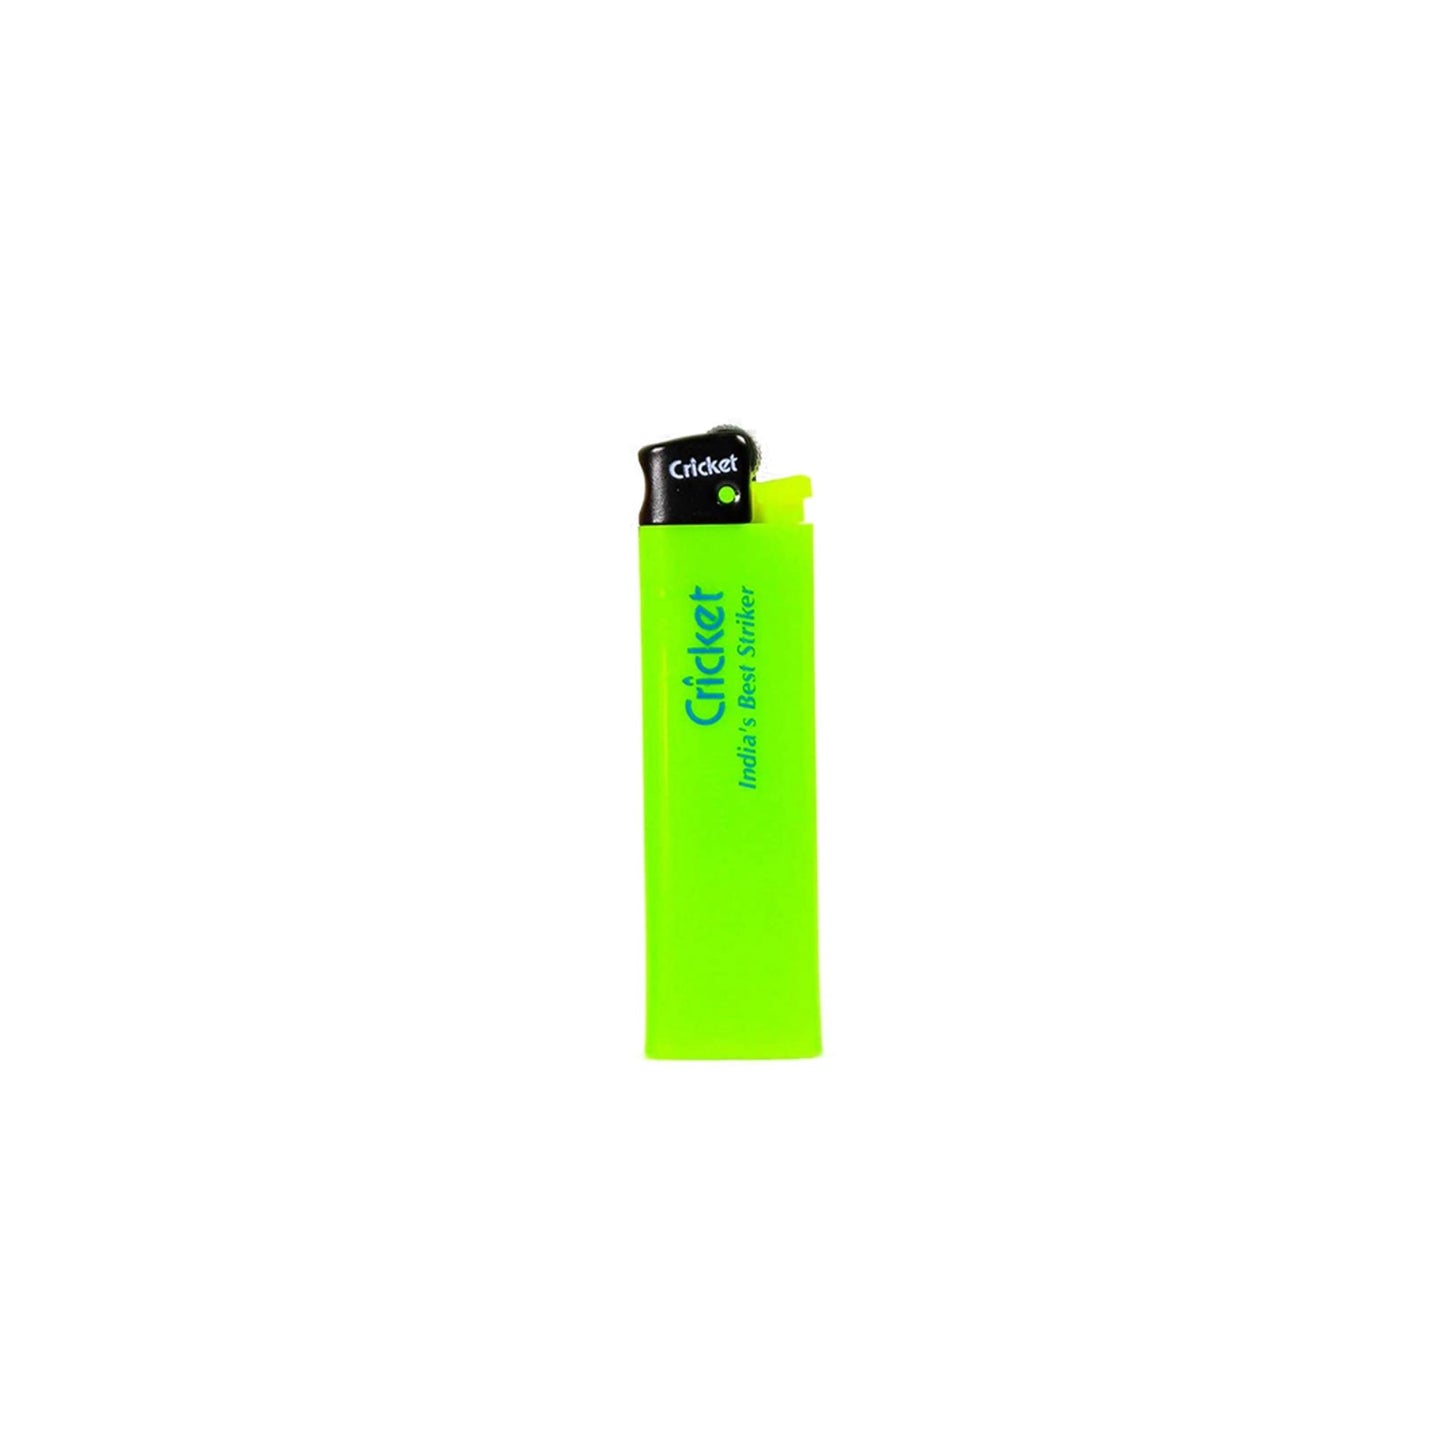 CRICKET Pocket Lighter - Classic